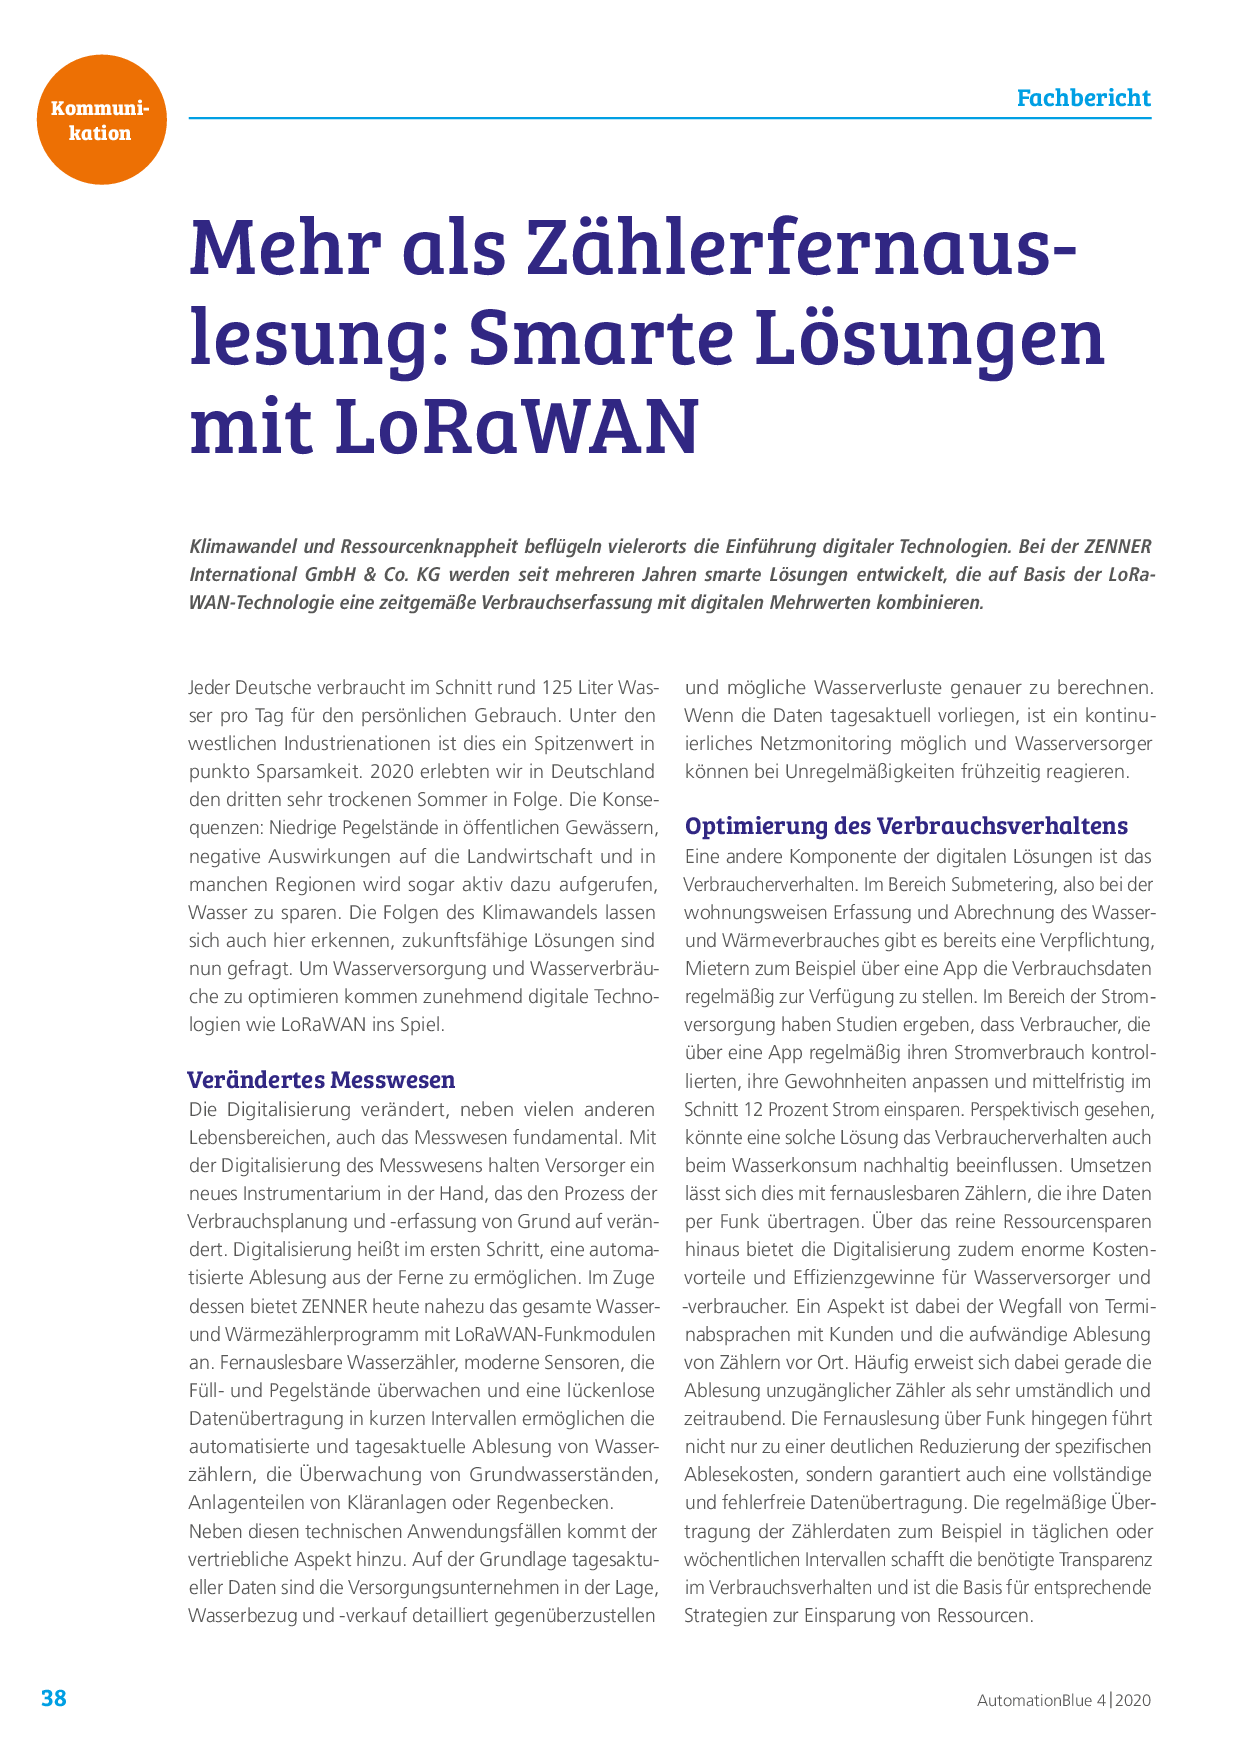 Mehr als Zählerfernauslesung: Smarte Lösungen mit LoRaWAN